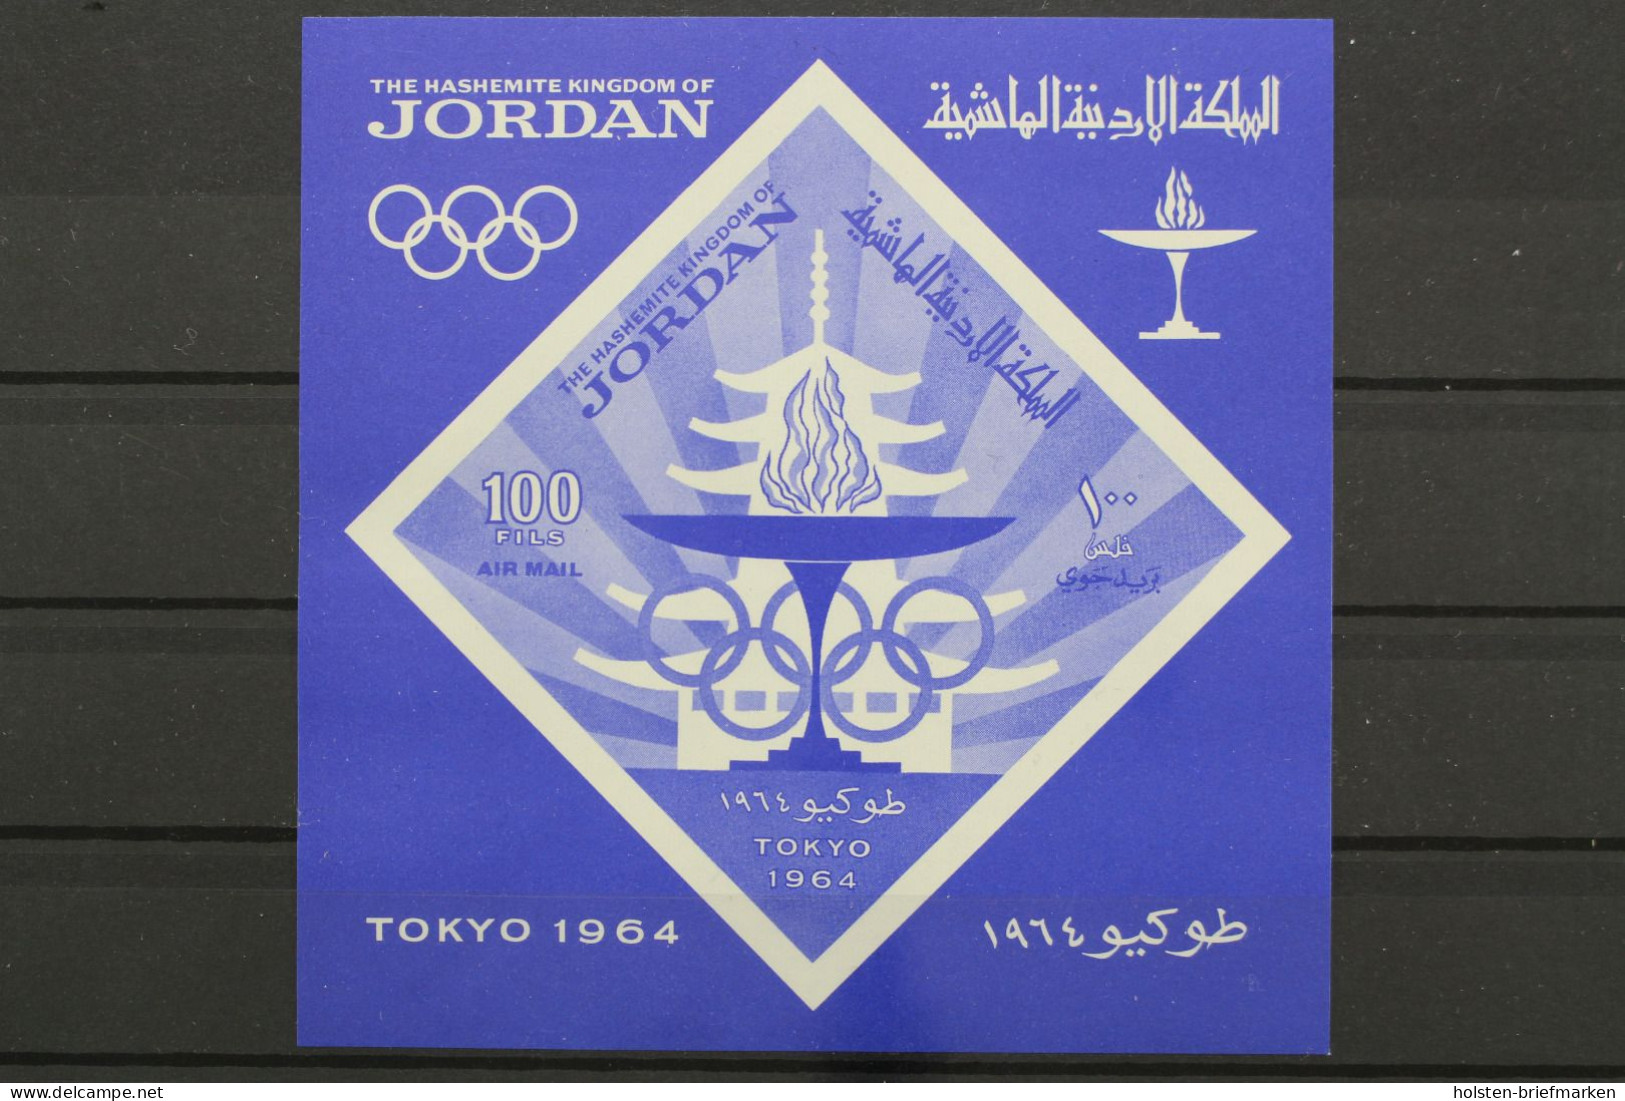 Jordanien, MiNr. Block 21, Postfrisch - Jordania